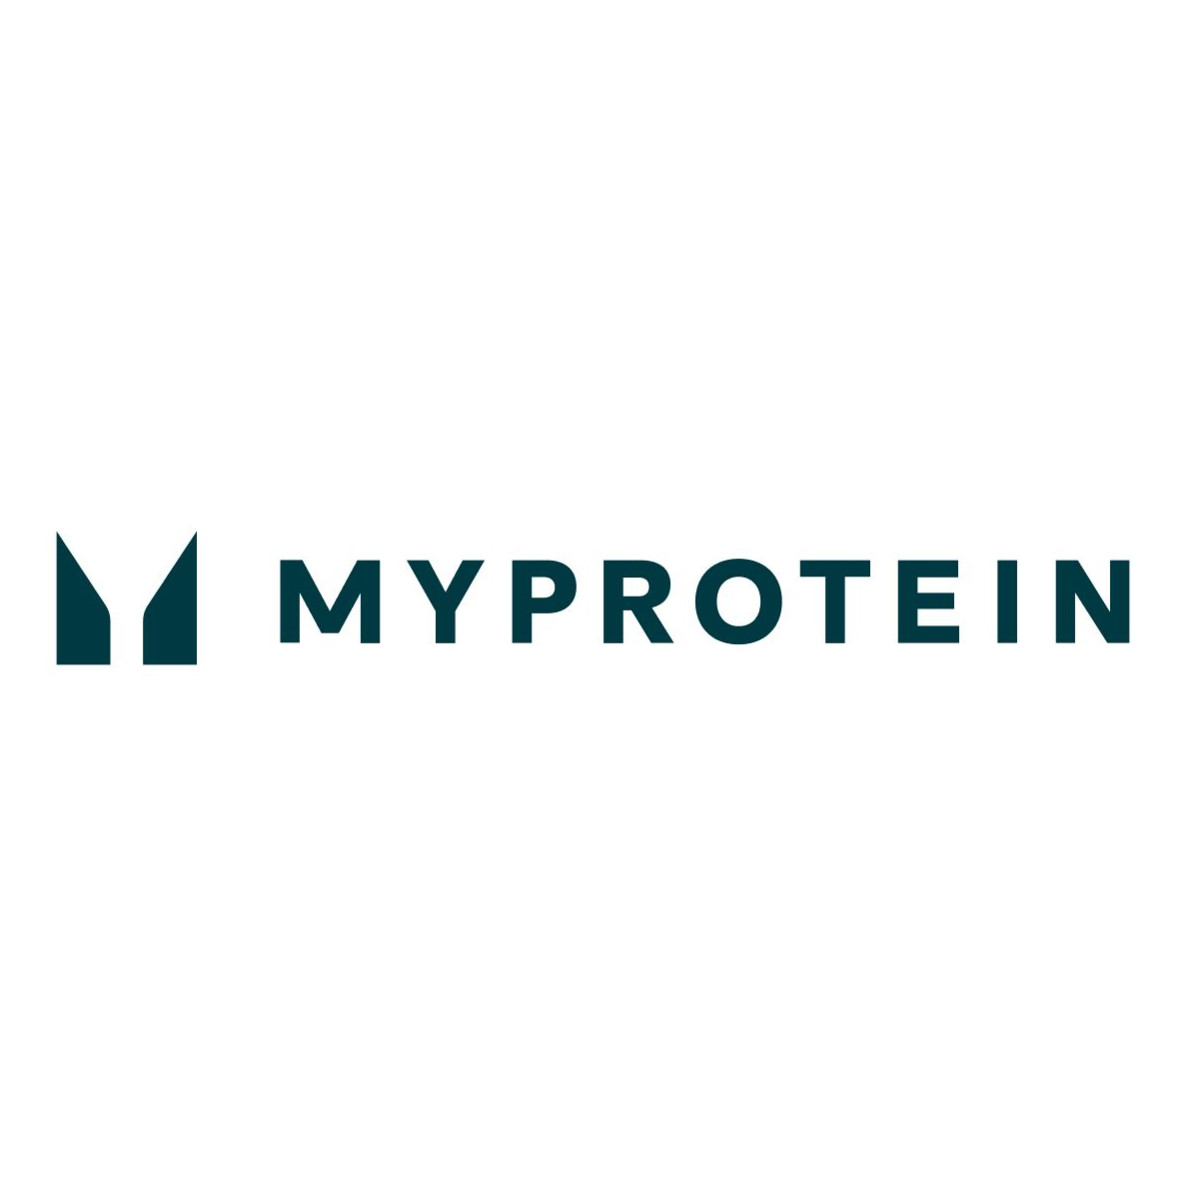 
	
		
		
		
		
		
		
			
			
			
			
				배송정보  | MYPROTEIN™
				
				
				
			
		
		
		
		
		

		
		
	
